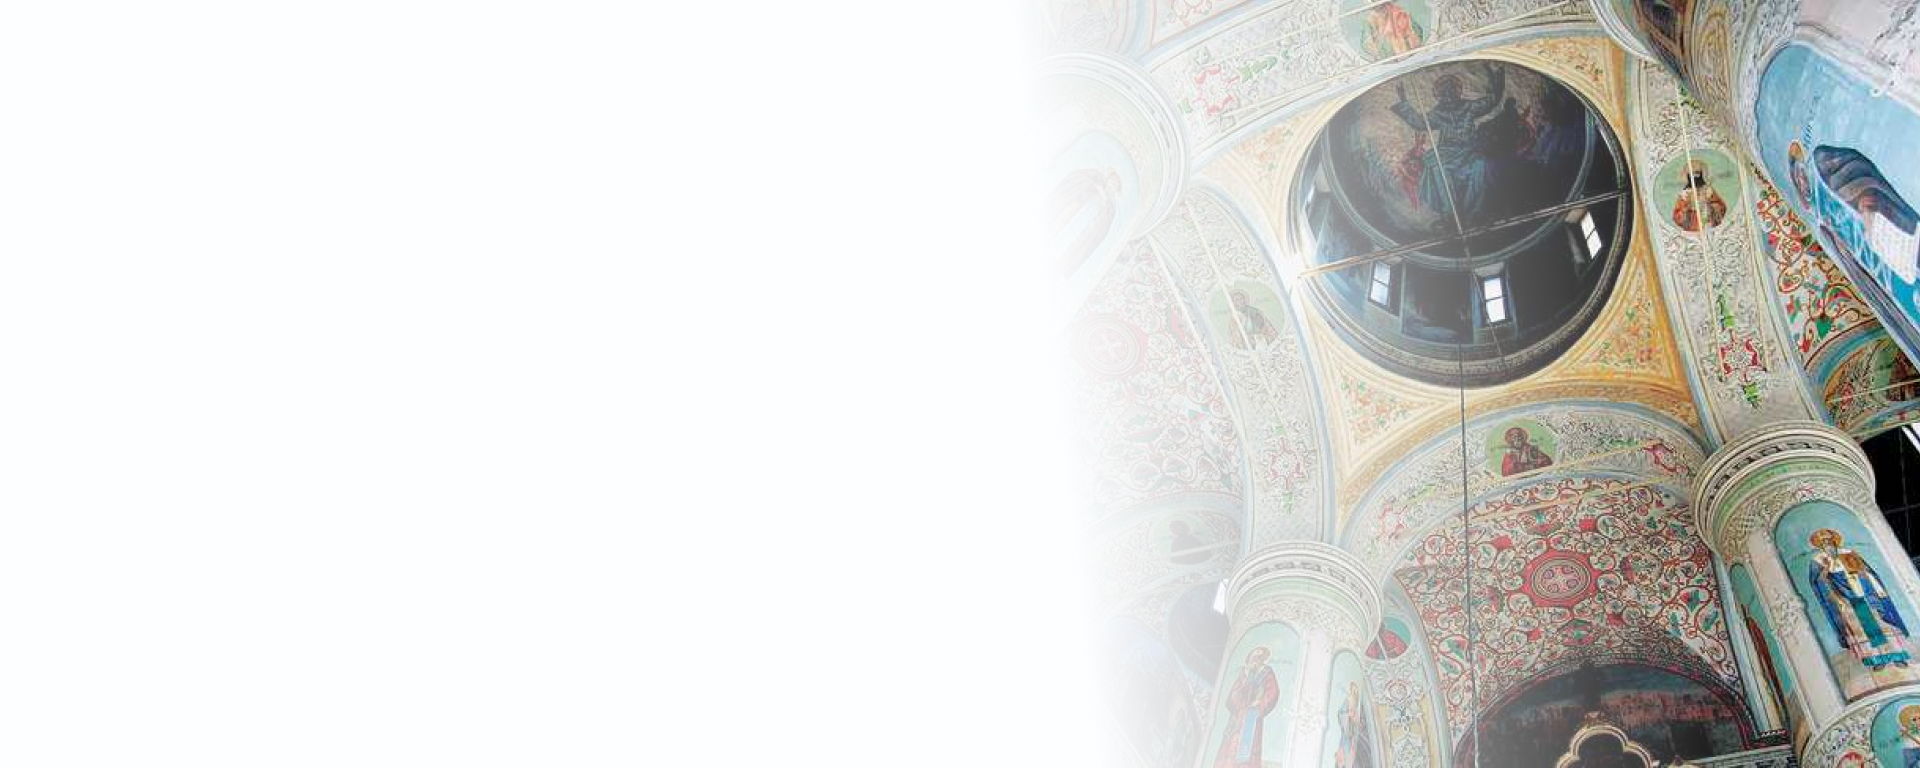 Лекция «Православная Вятка. Плащаница и иные реликвии» | Поющие храмы Вятки